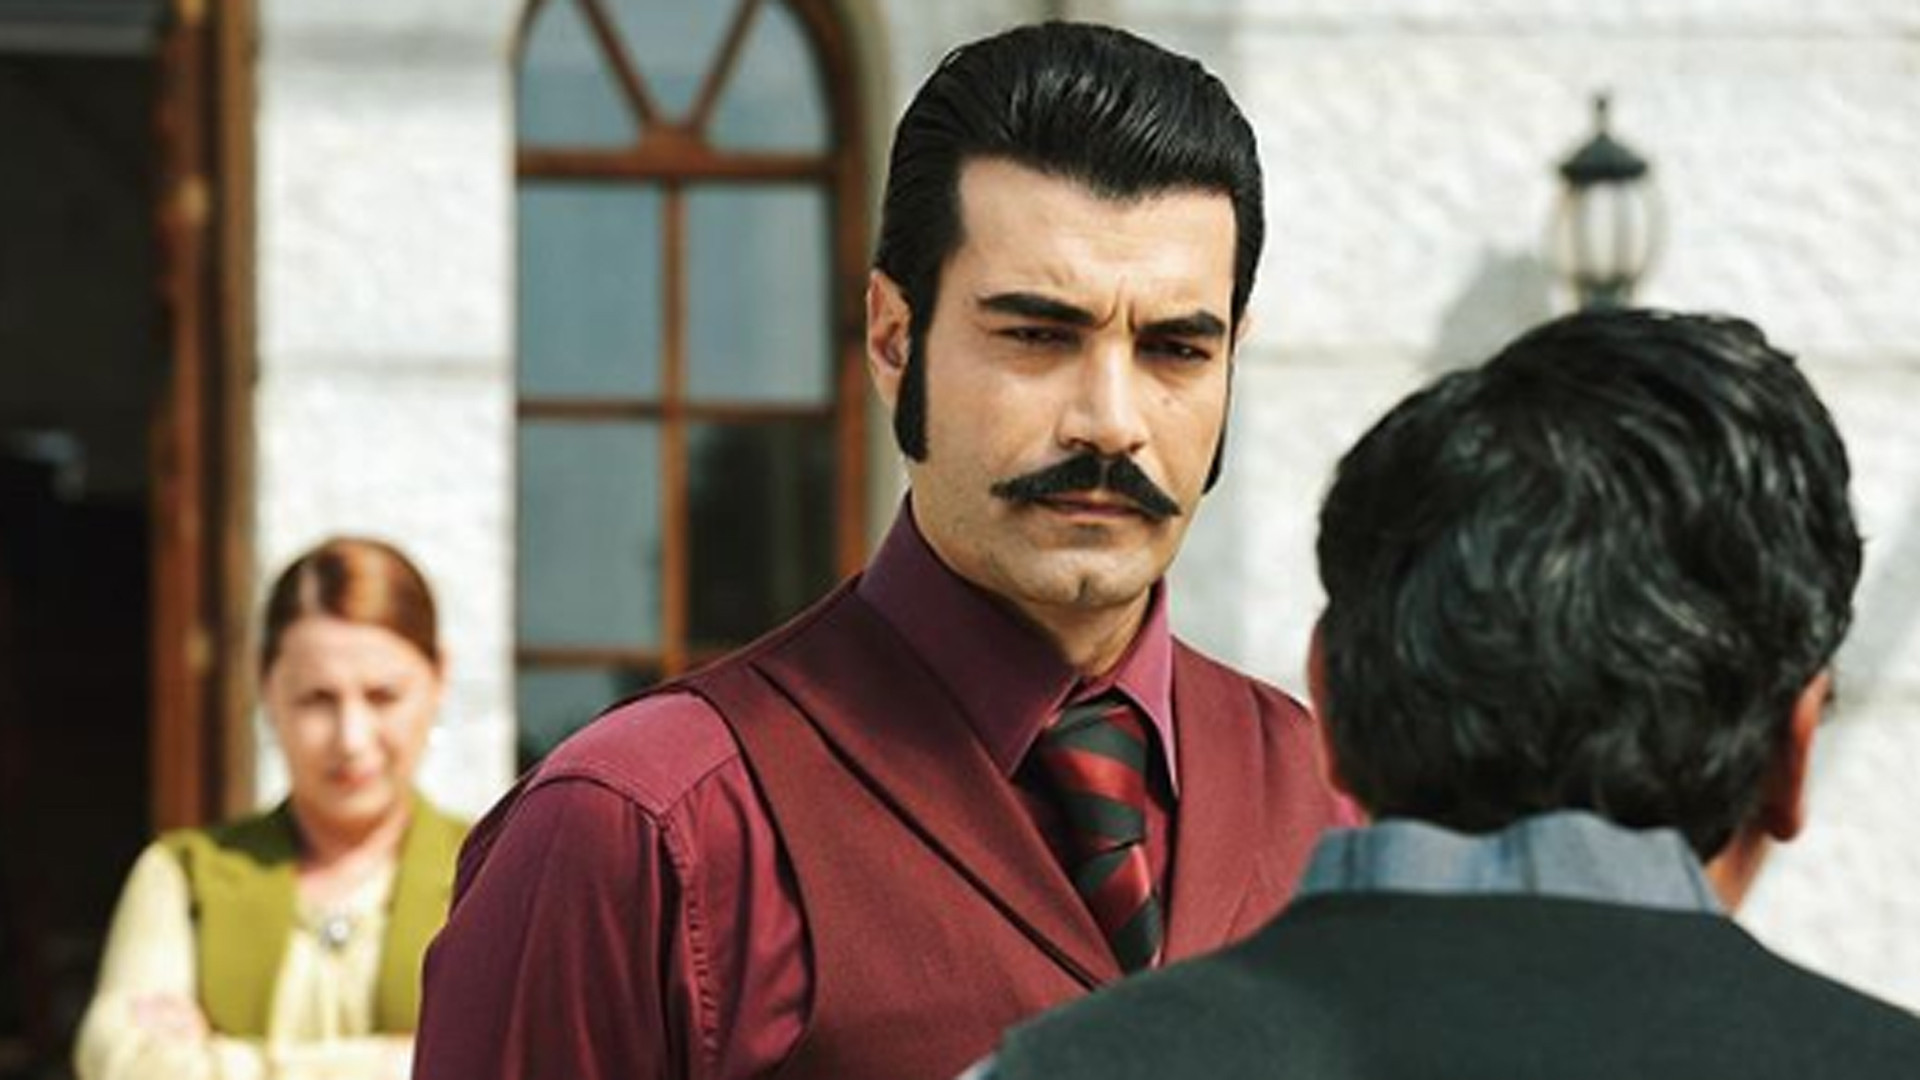 Kayserili başrol oyuncusu Murat Ünalmış, set çalışanına saldırdığı  iddialarını yalanladı - Kayseri Deniz Postası